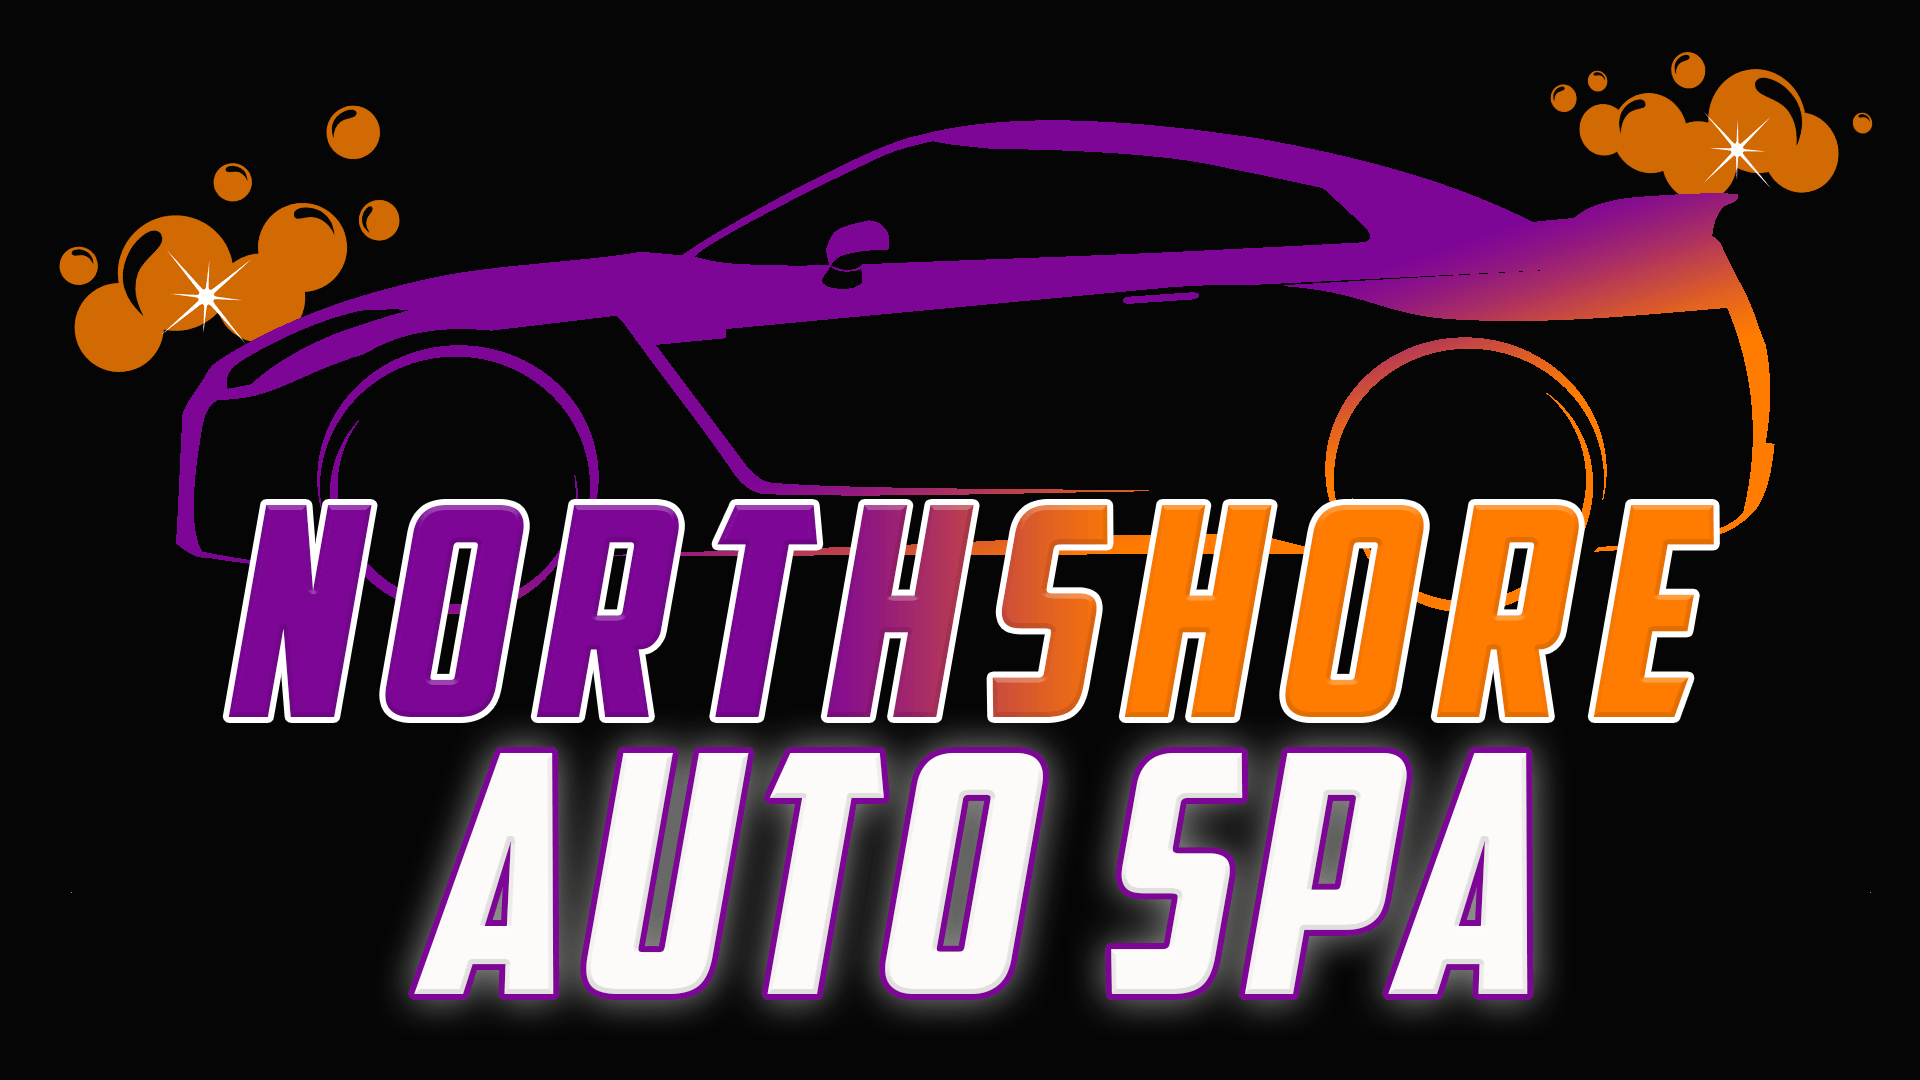 www.northshoreautospainc.com